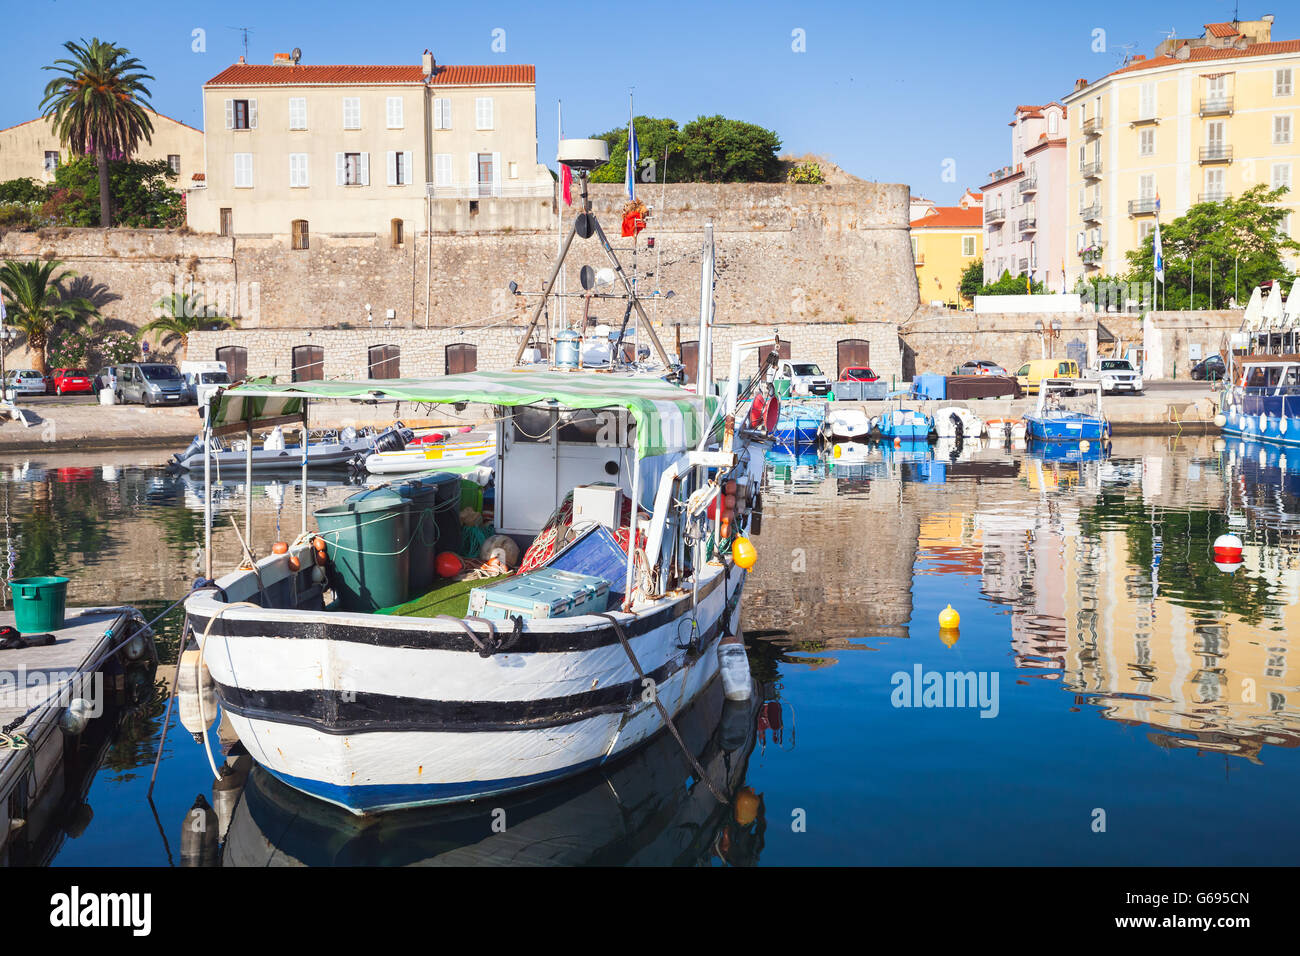 Bateau de pêche en bois blanc amarré dans le vieux port d'Ajaccio, Corse, France Banque D'Images